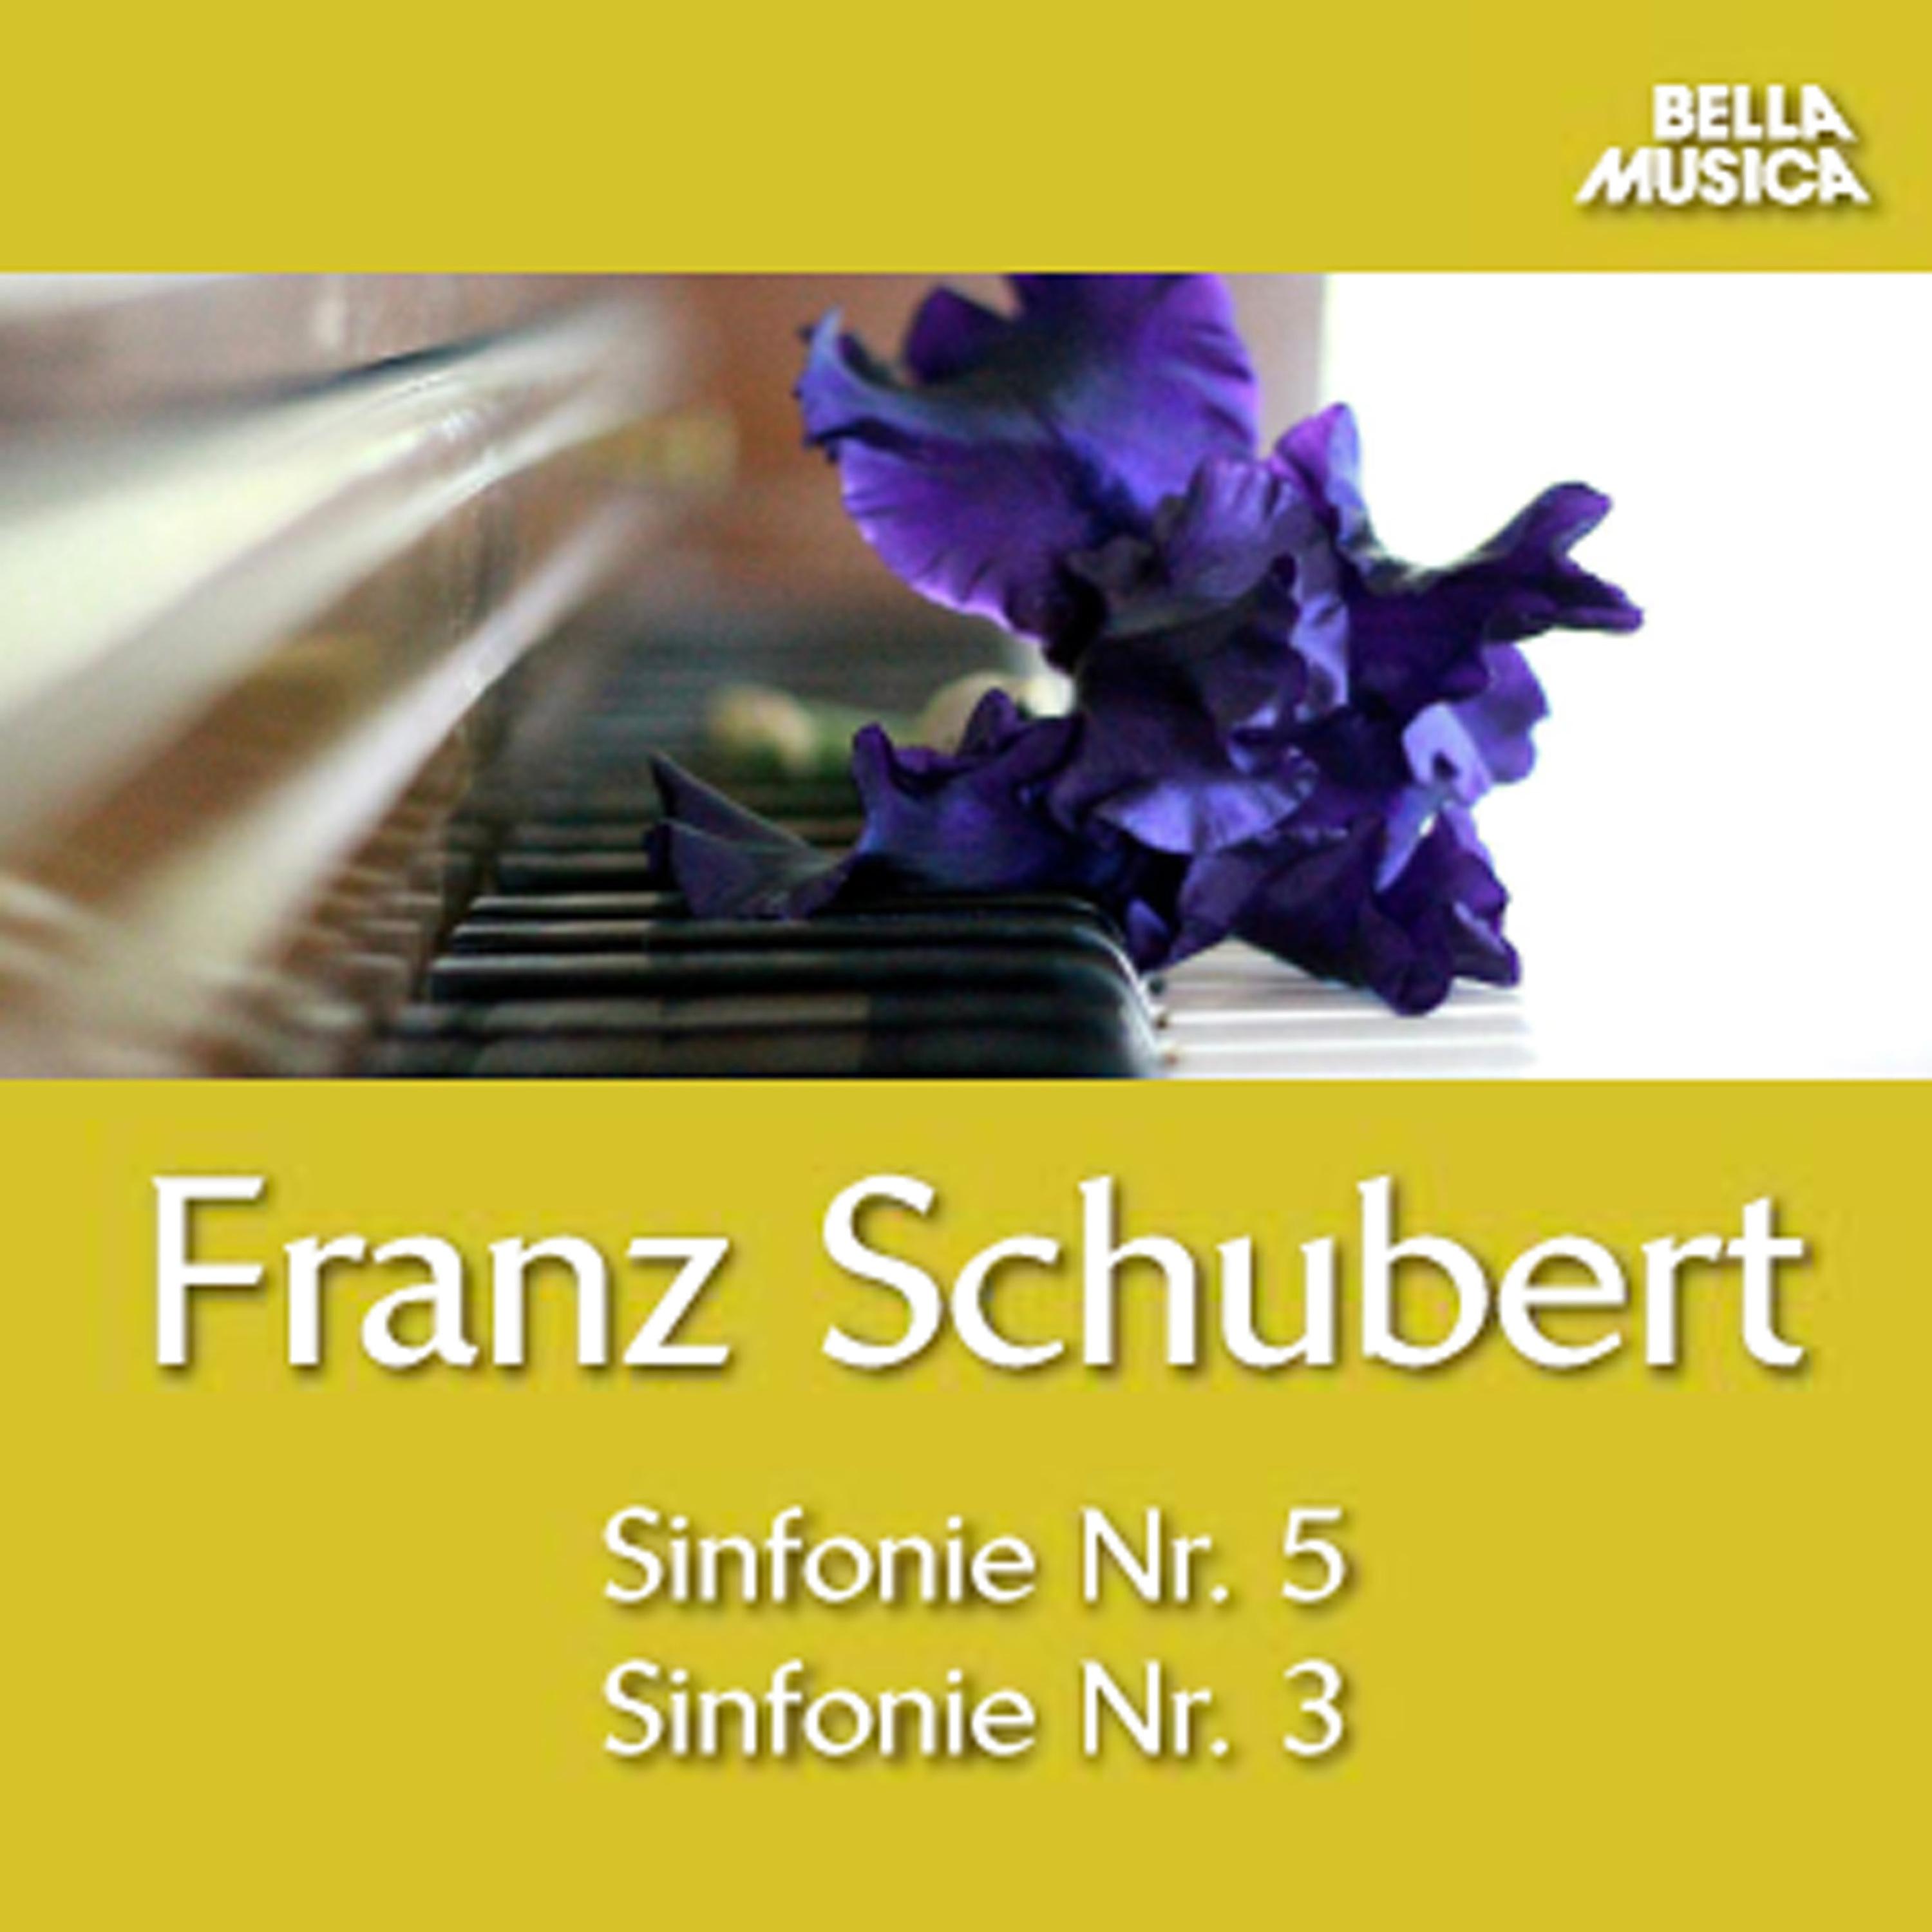 Schubert: Sinfonie No. 5, Sinfonie No. 3 und Ouvertü re